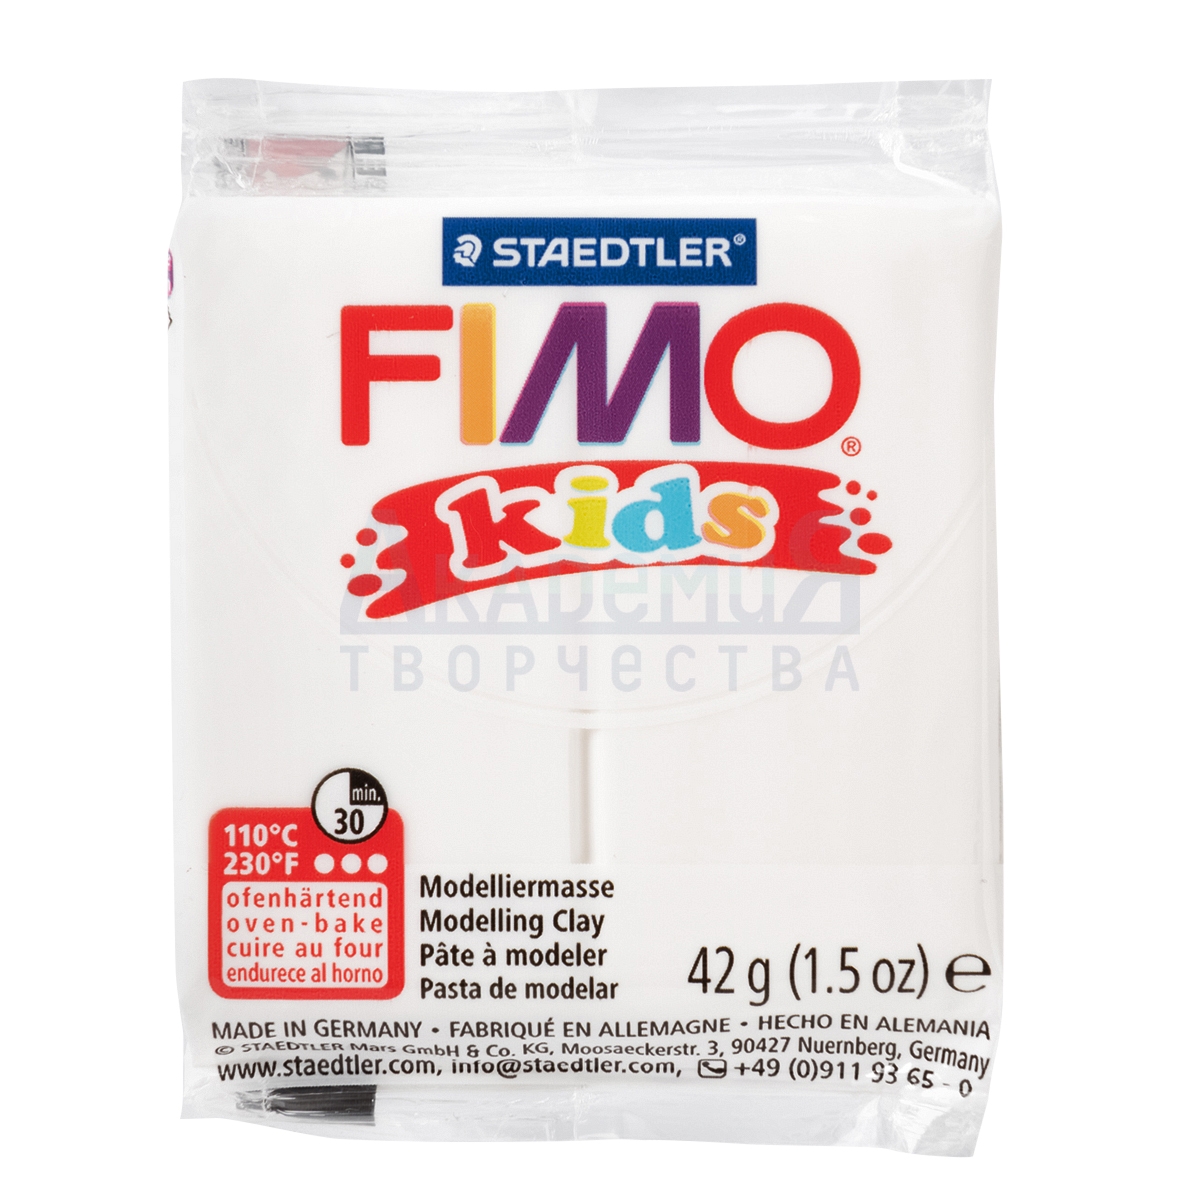 FIMO kids   8030-0  